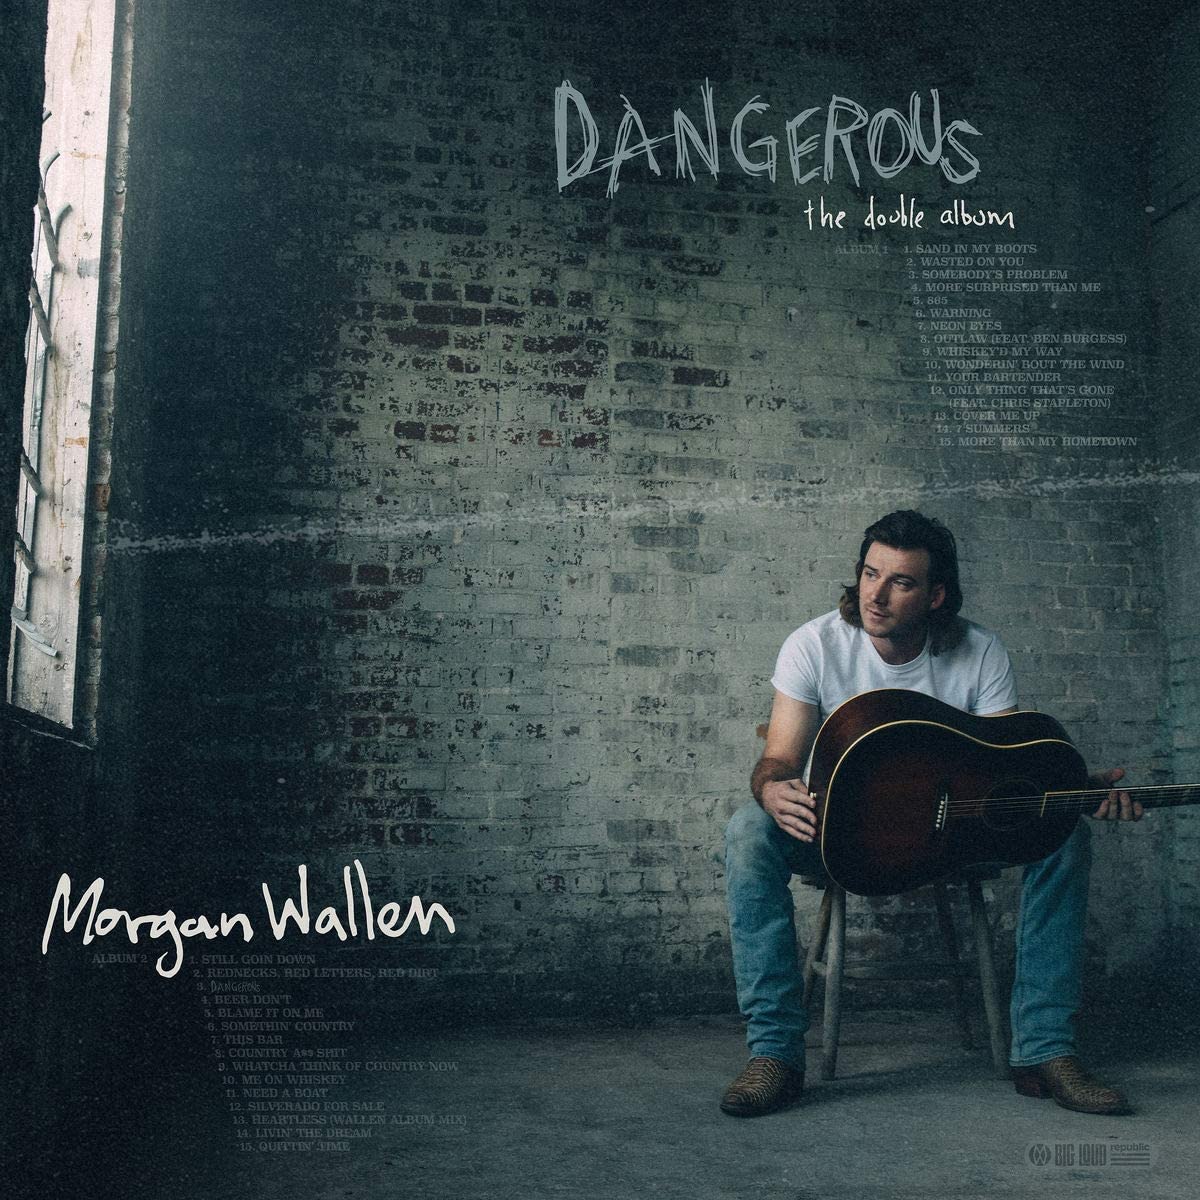 Morgan Wallen - Dangerous: The Double Album - 3LP